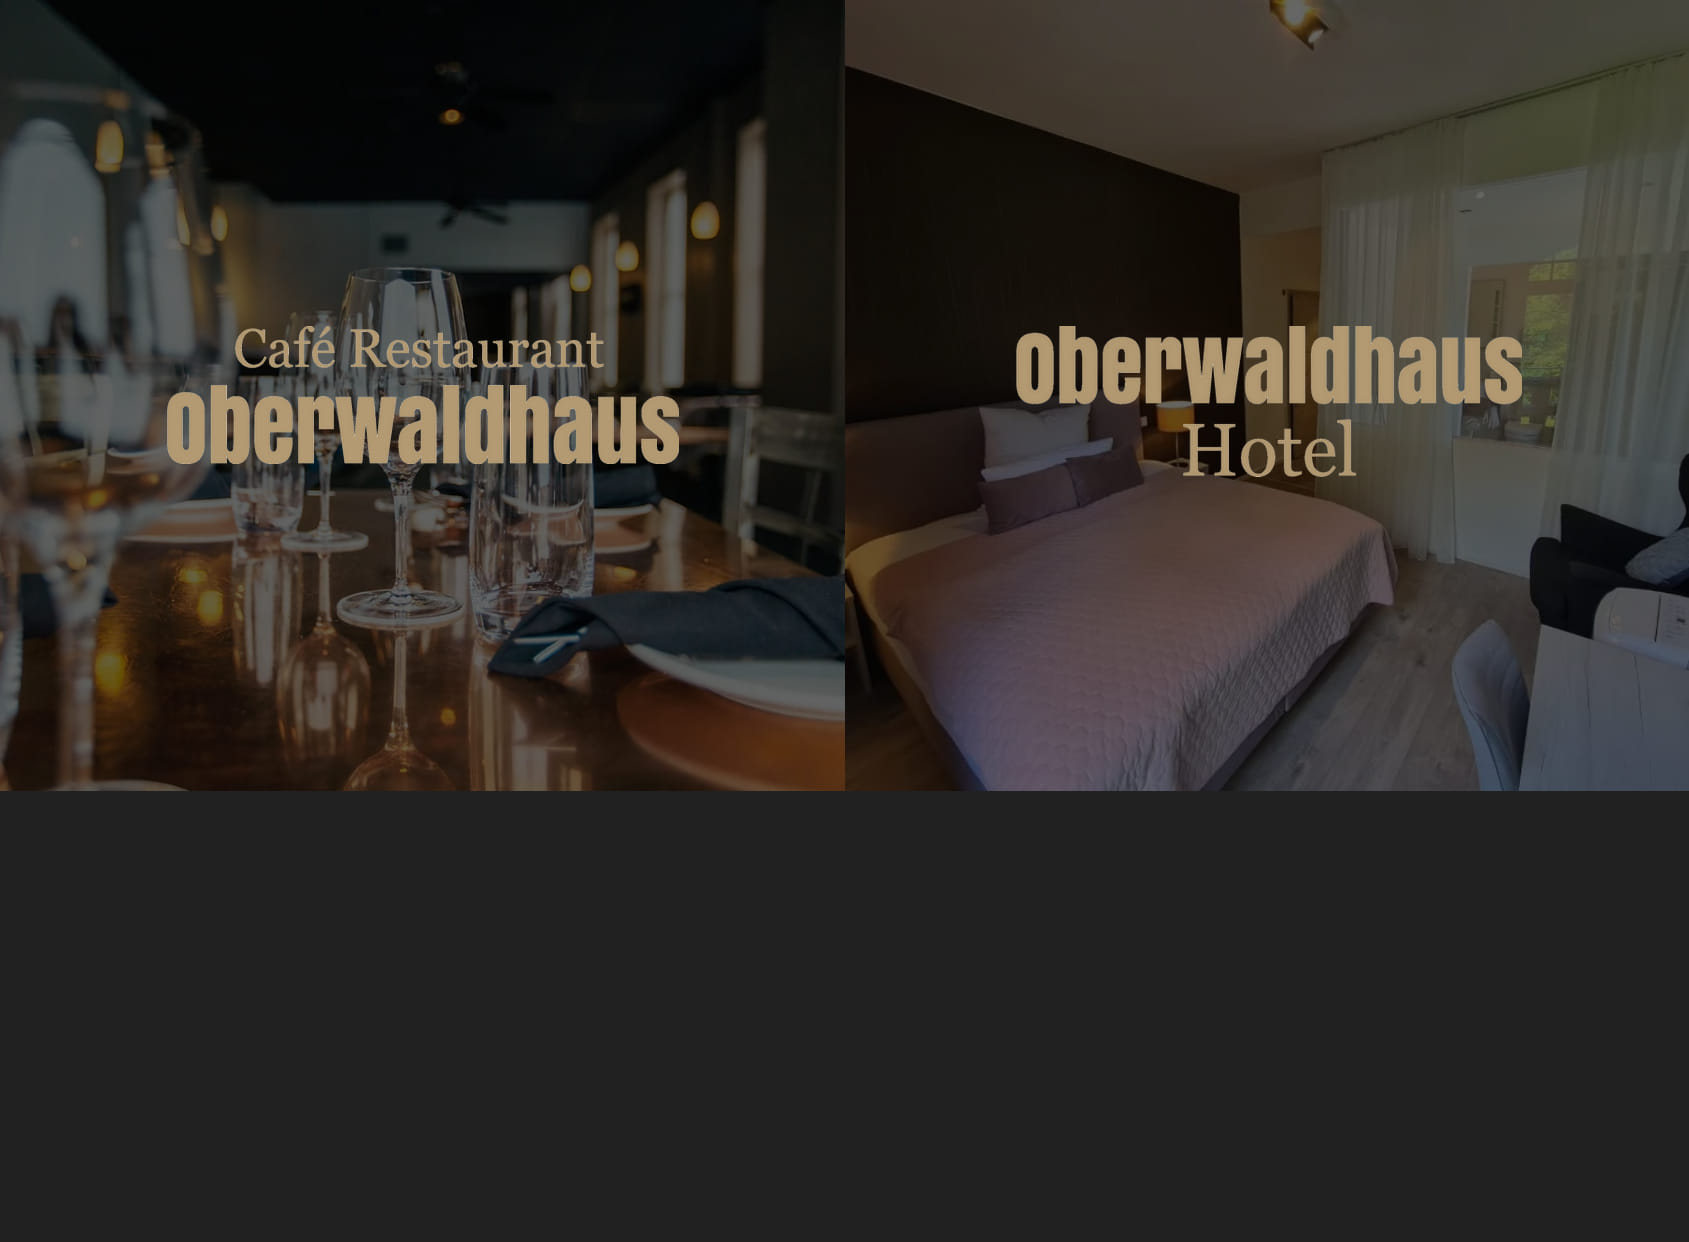 Oberwaldhaus Café Restaurant Hotel